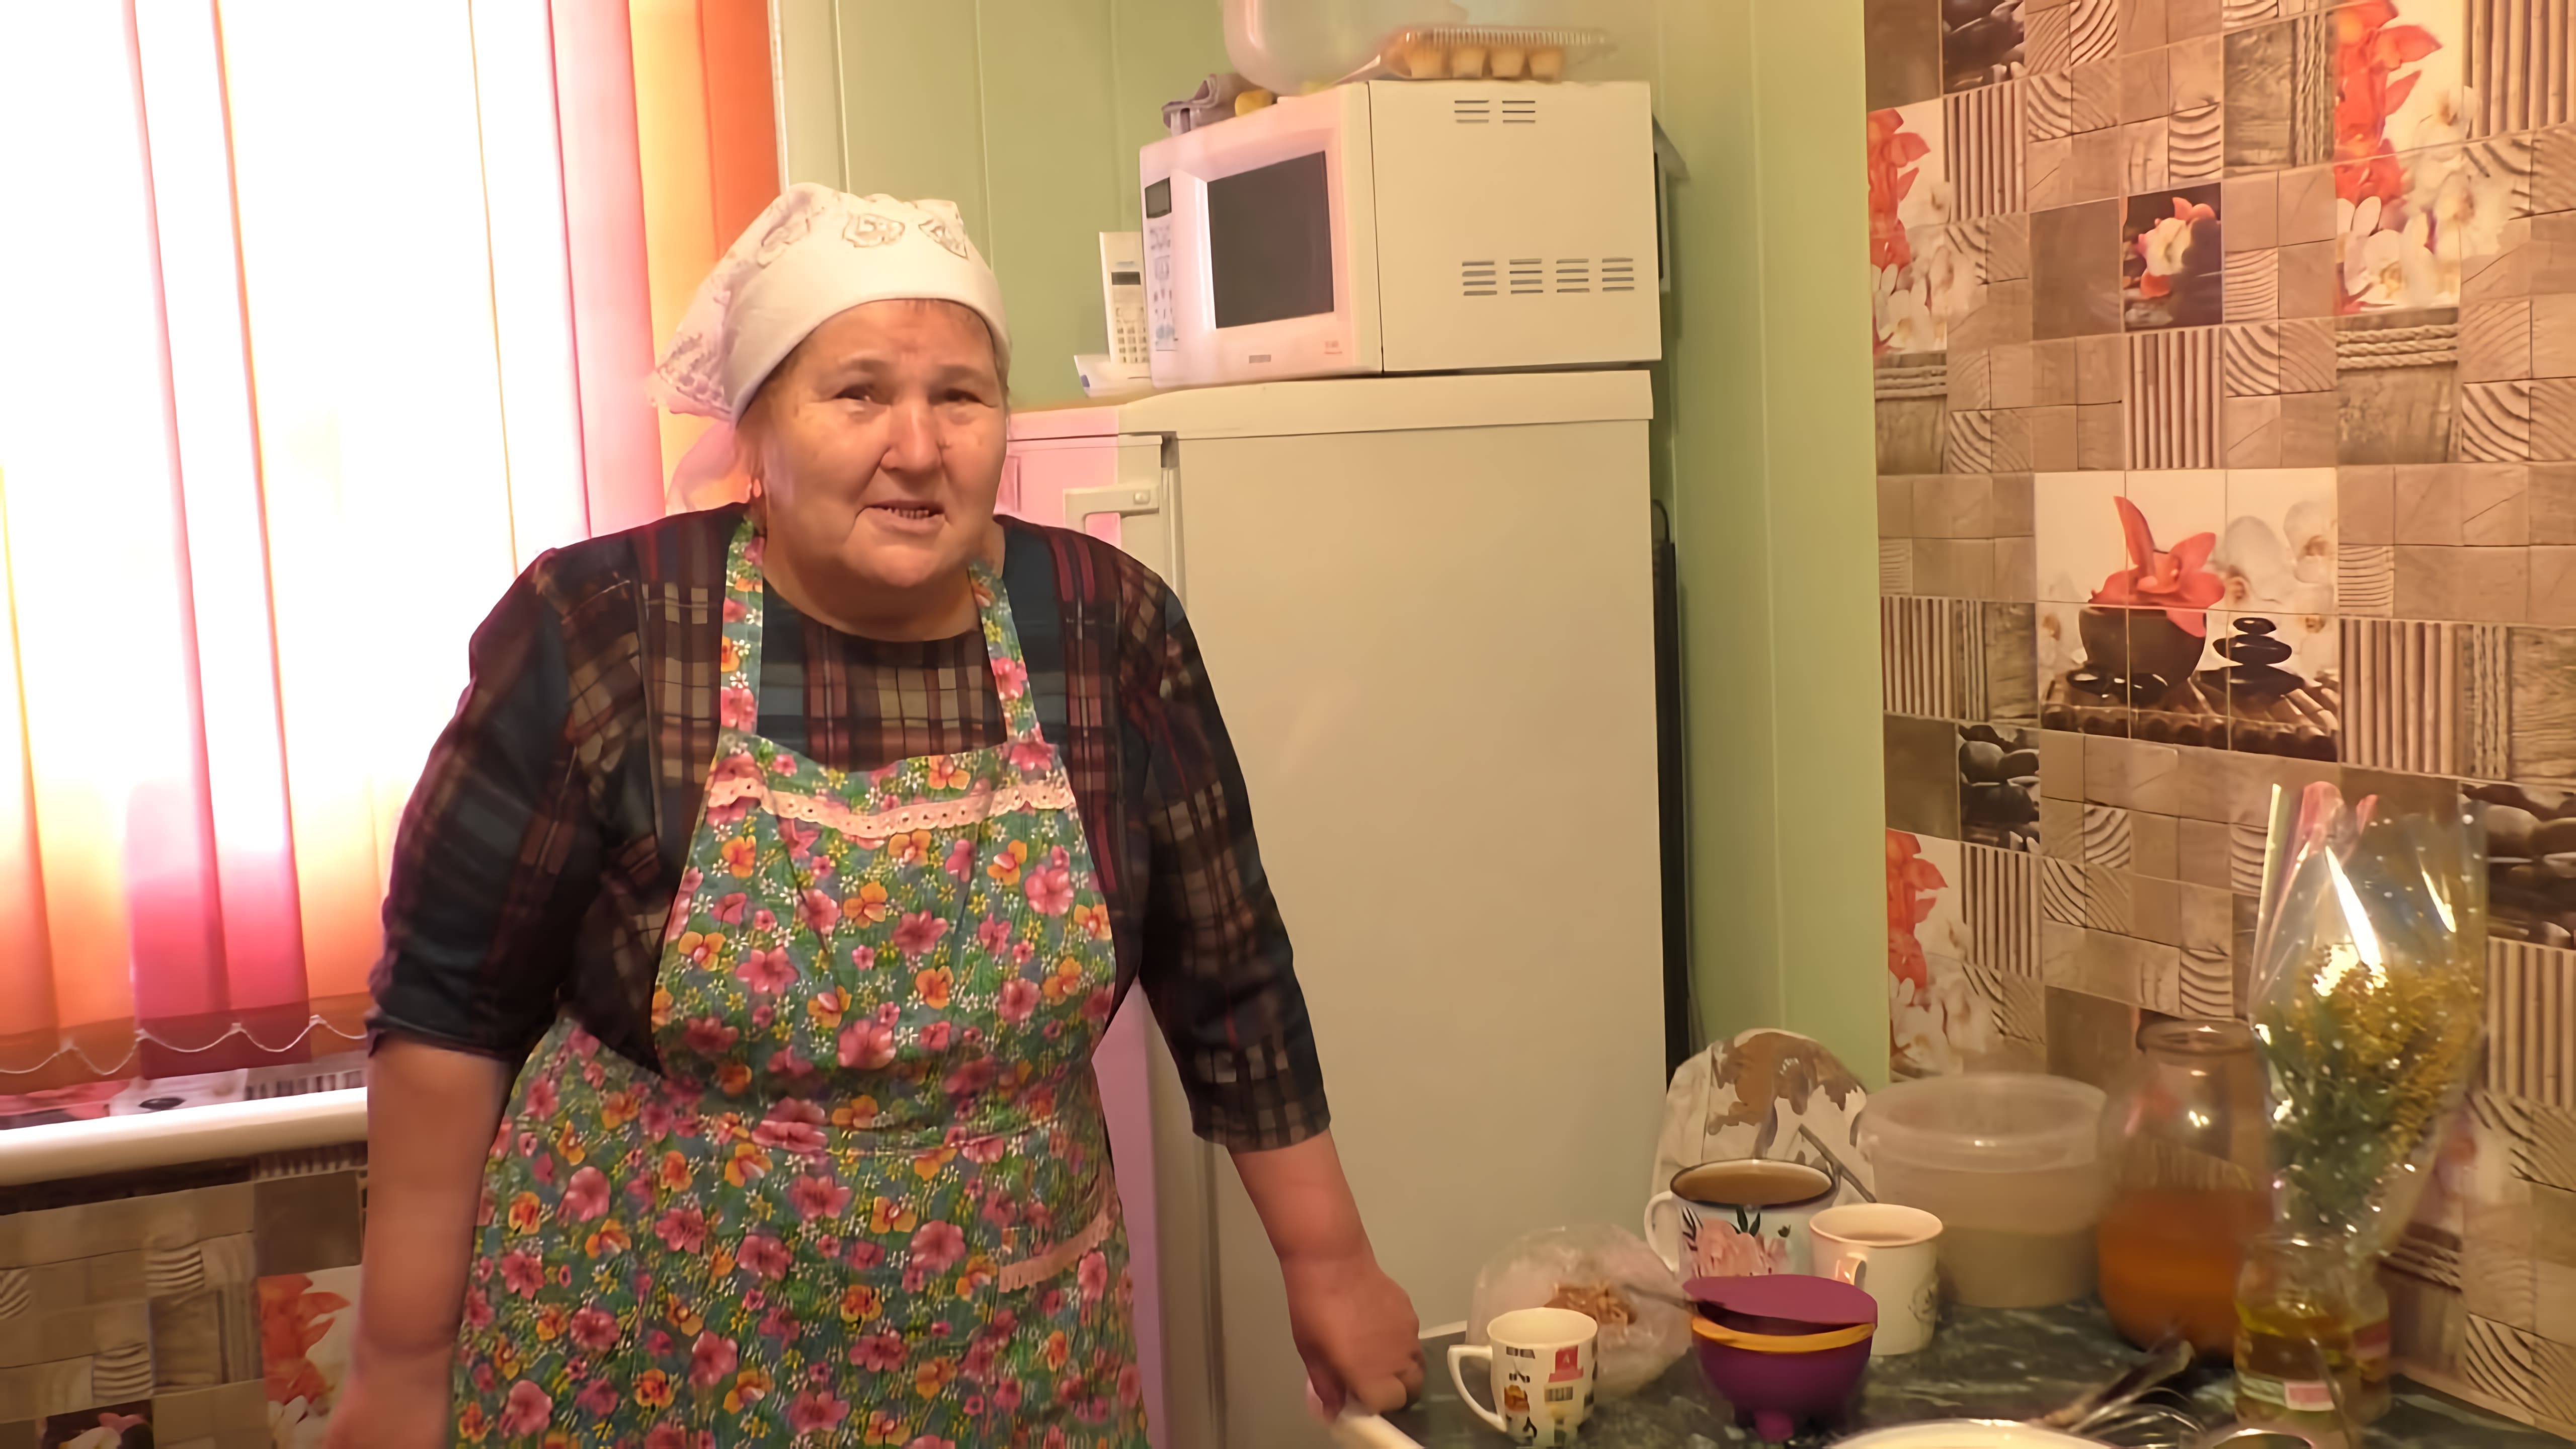 В этом видео рассказывается о рубрике "Истории у грубки", где обсуждаются рецепты казачьей кухни